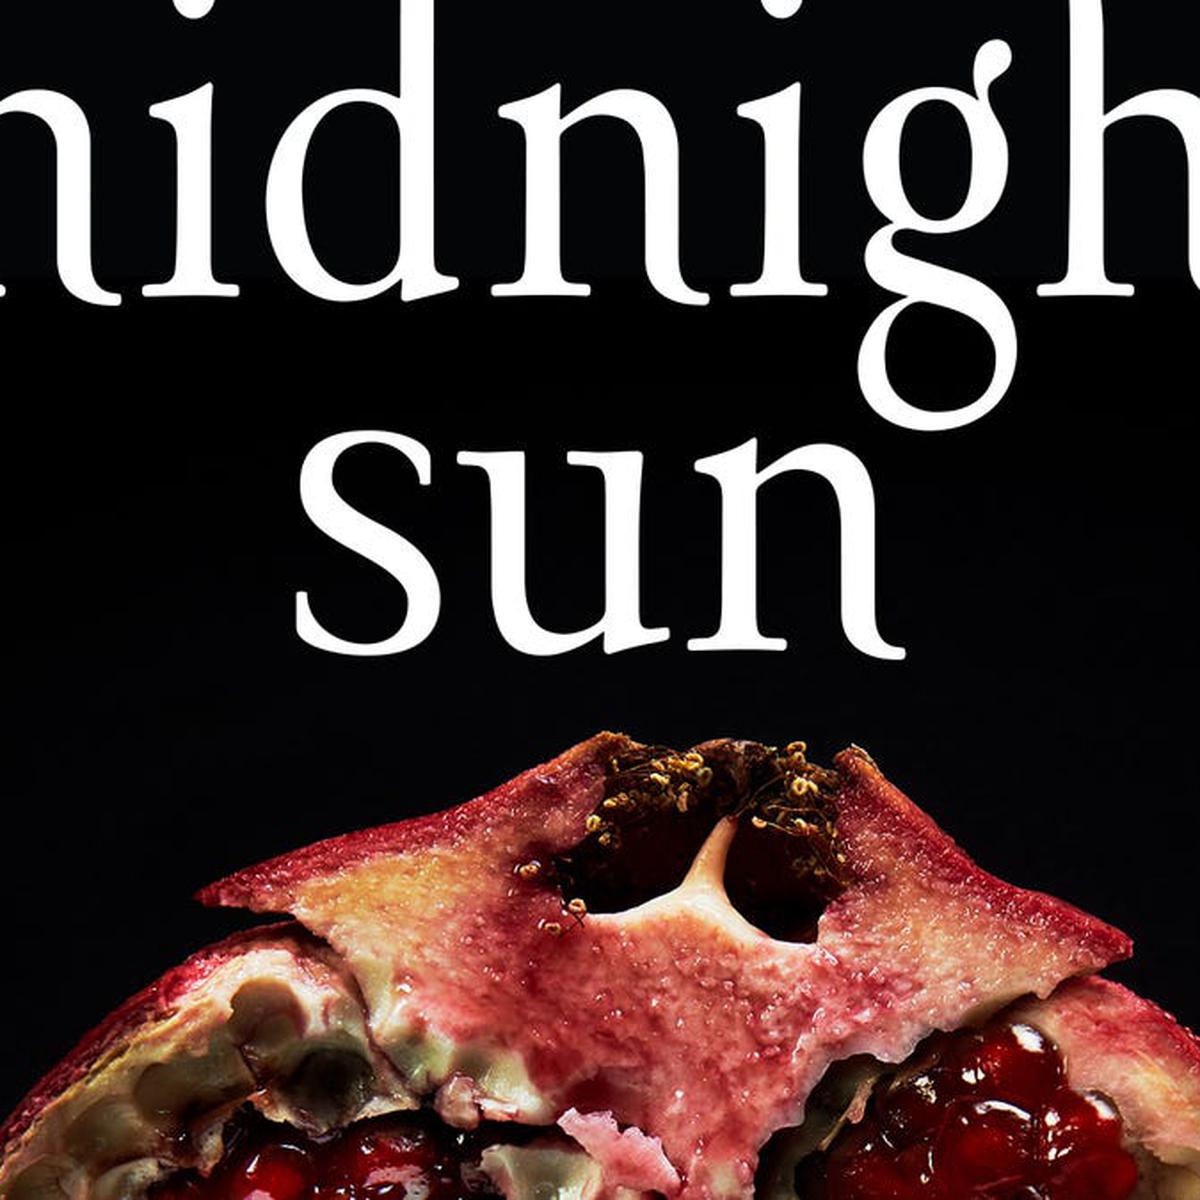 Crepúsculo: 15 momentos de Twilight que tienen más sentido tras leer  Midnight Sun, Películas, Cine nnda nnlt, FAMA